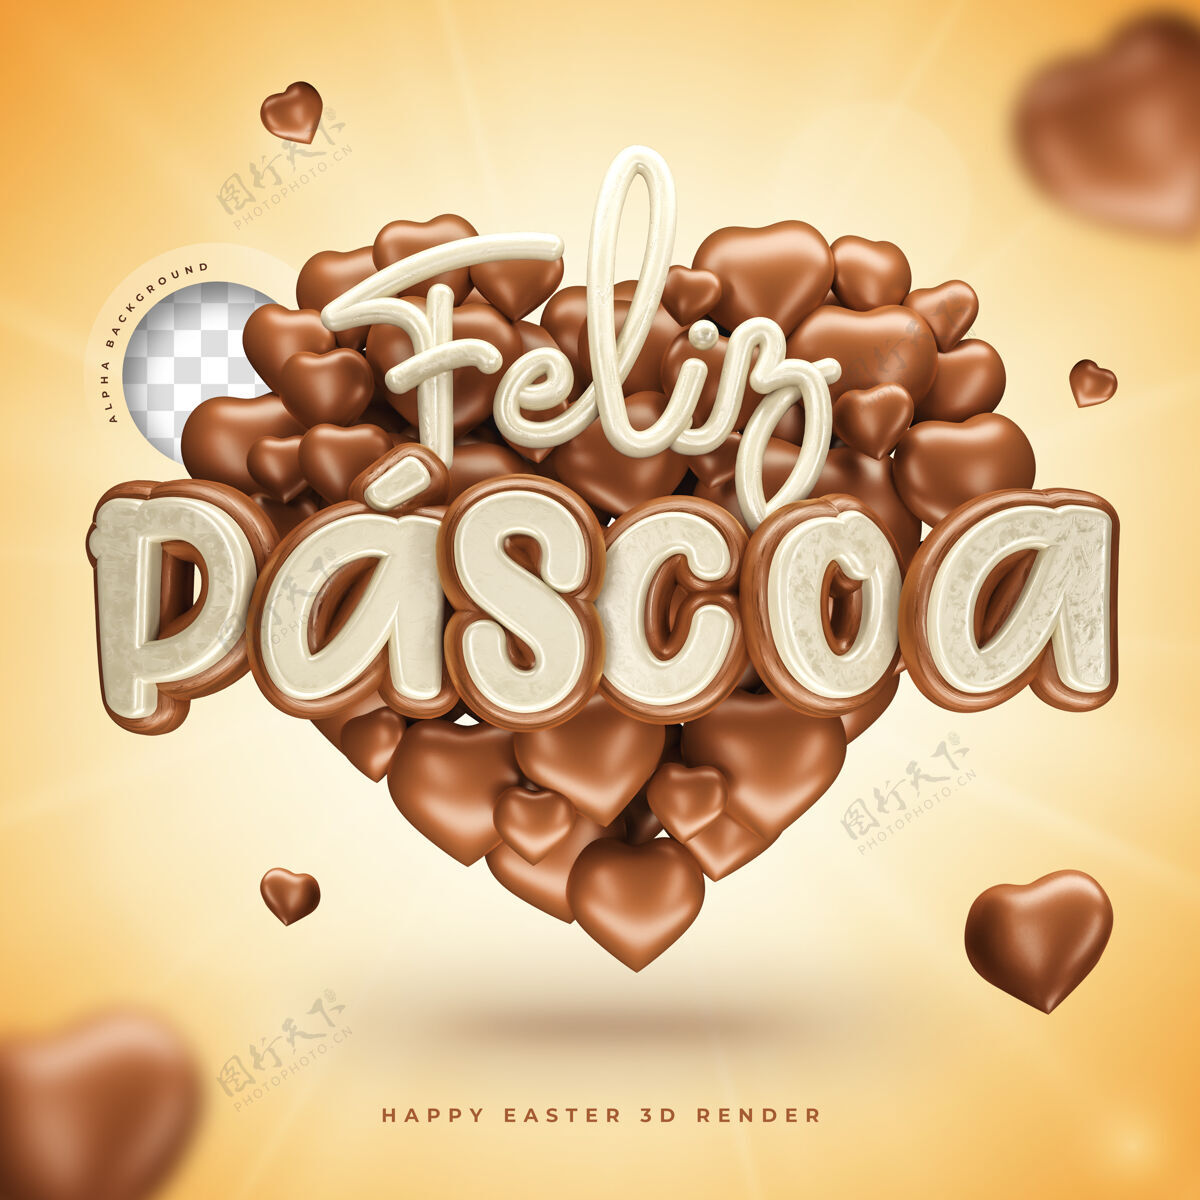 复活节快乐3d巴西复活节快乐标志 心形 巧克力色巴西白天符号